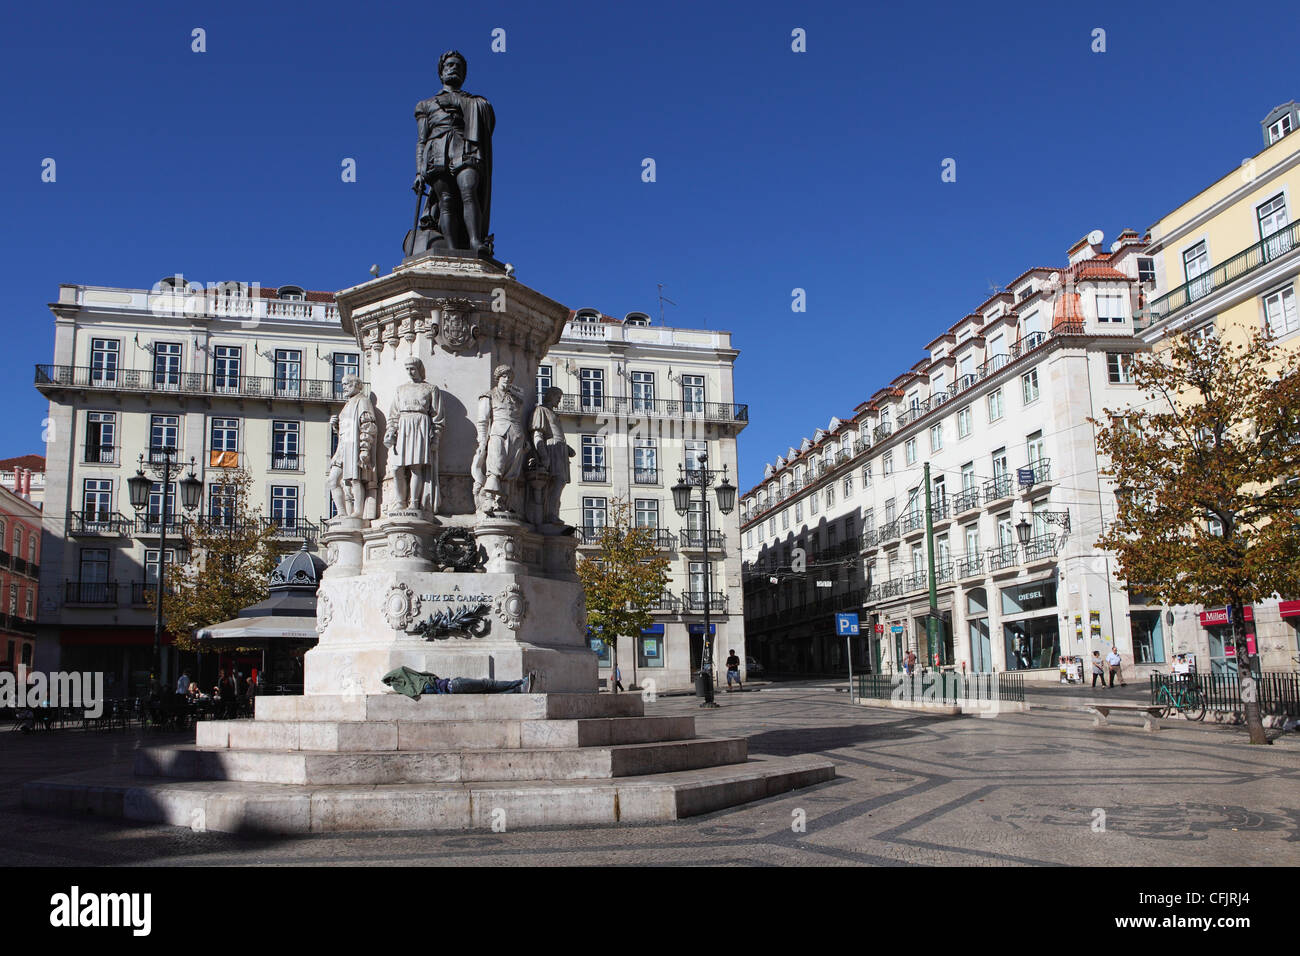 Largo de Camoes square, avec l'Luiz de Camoes, mémorial du Bairro Alto, Lisbonne, Portugal, Europe Banque D'Images